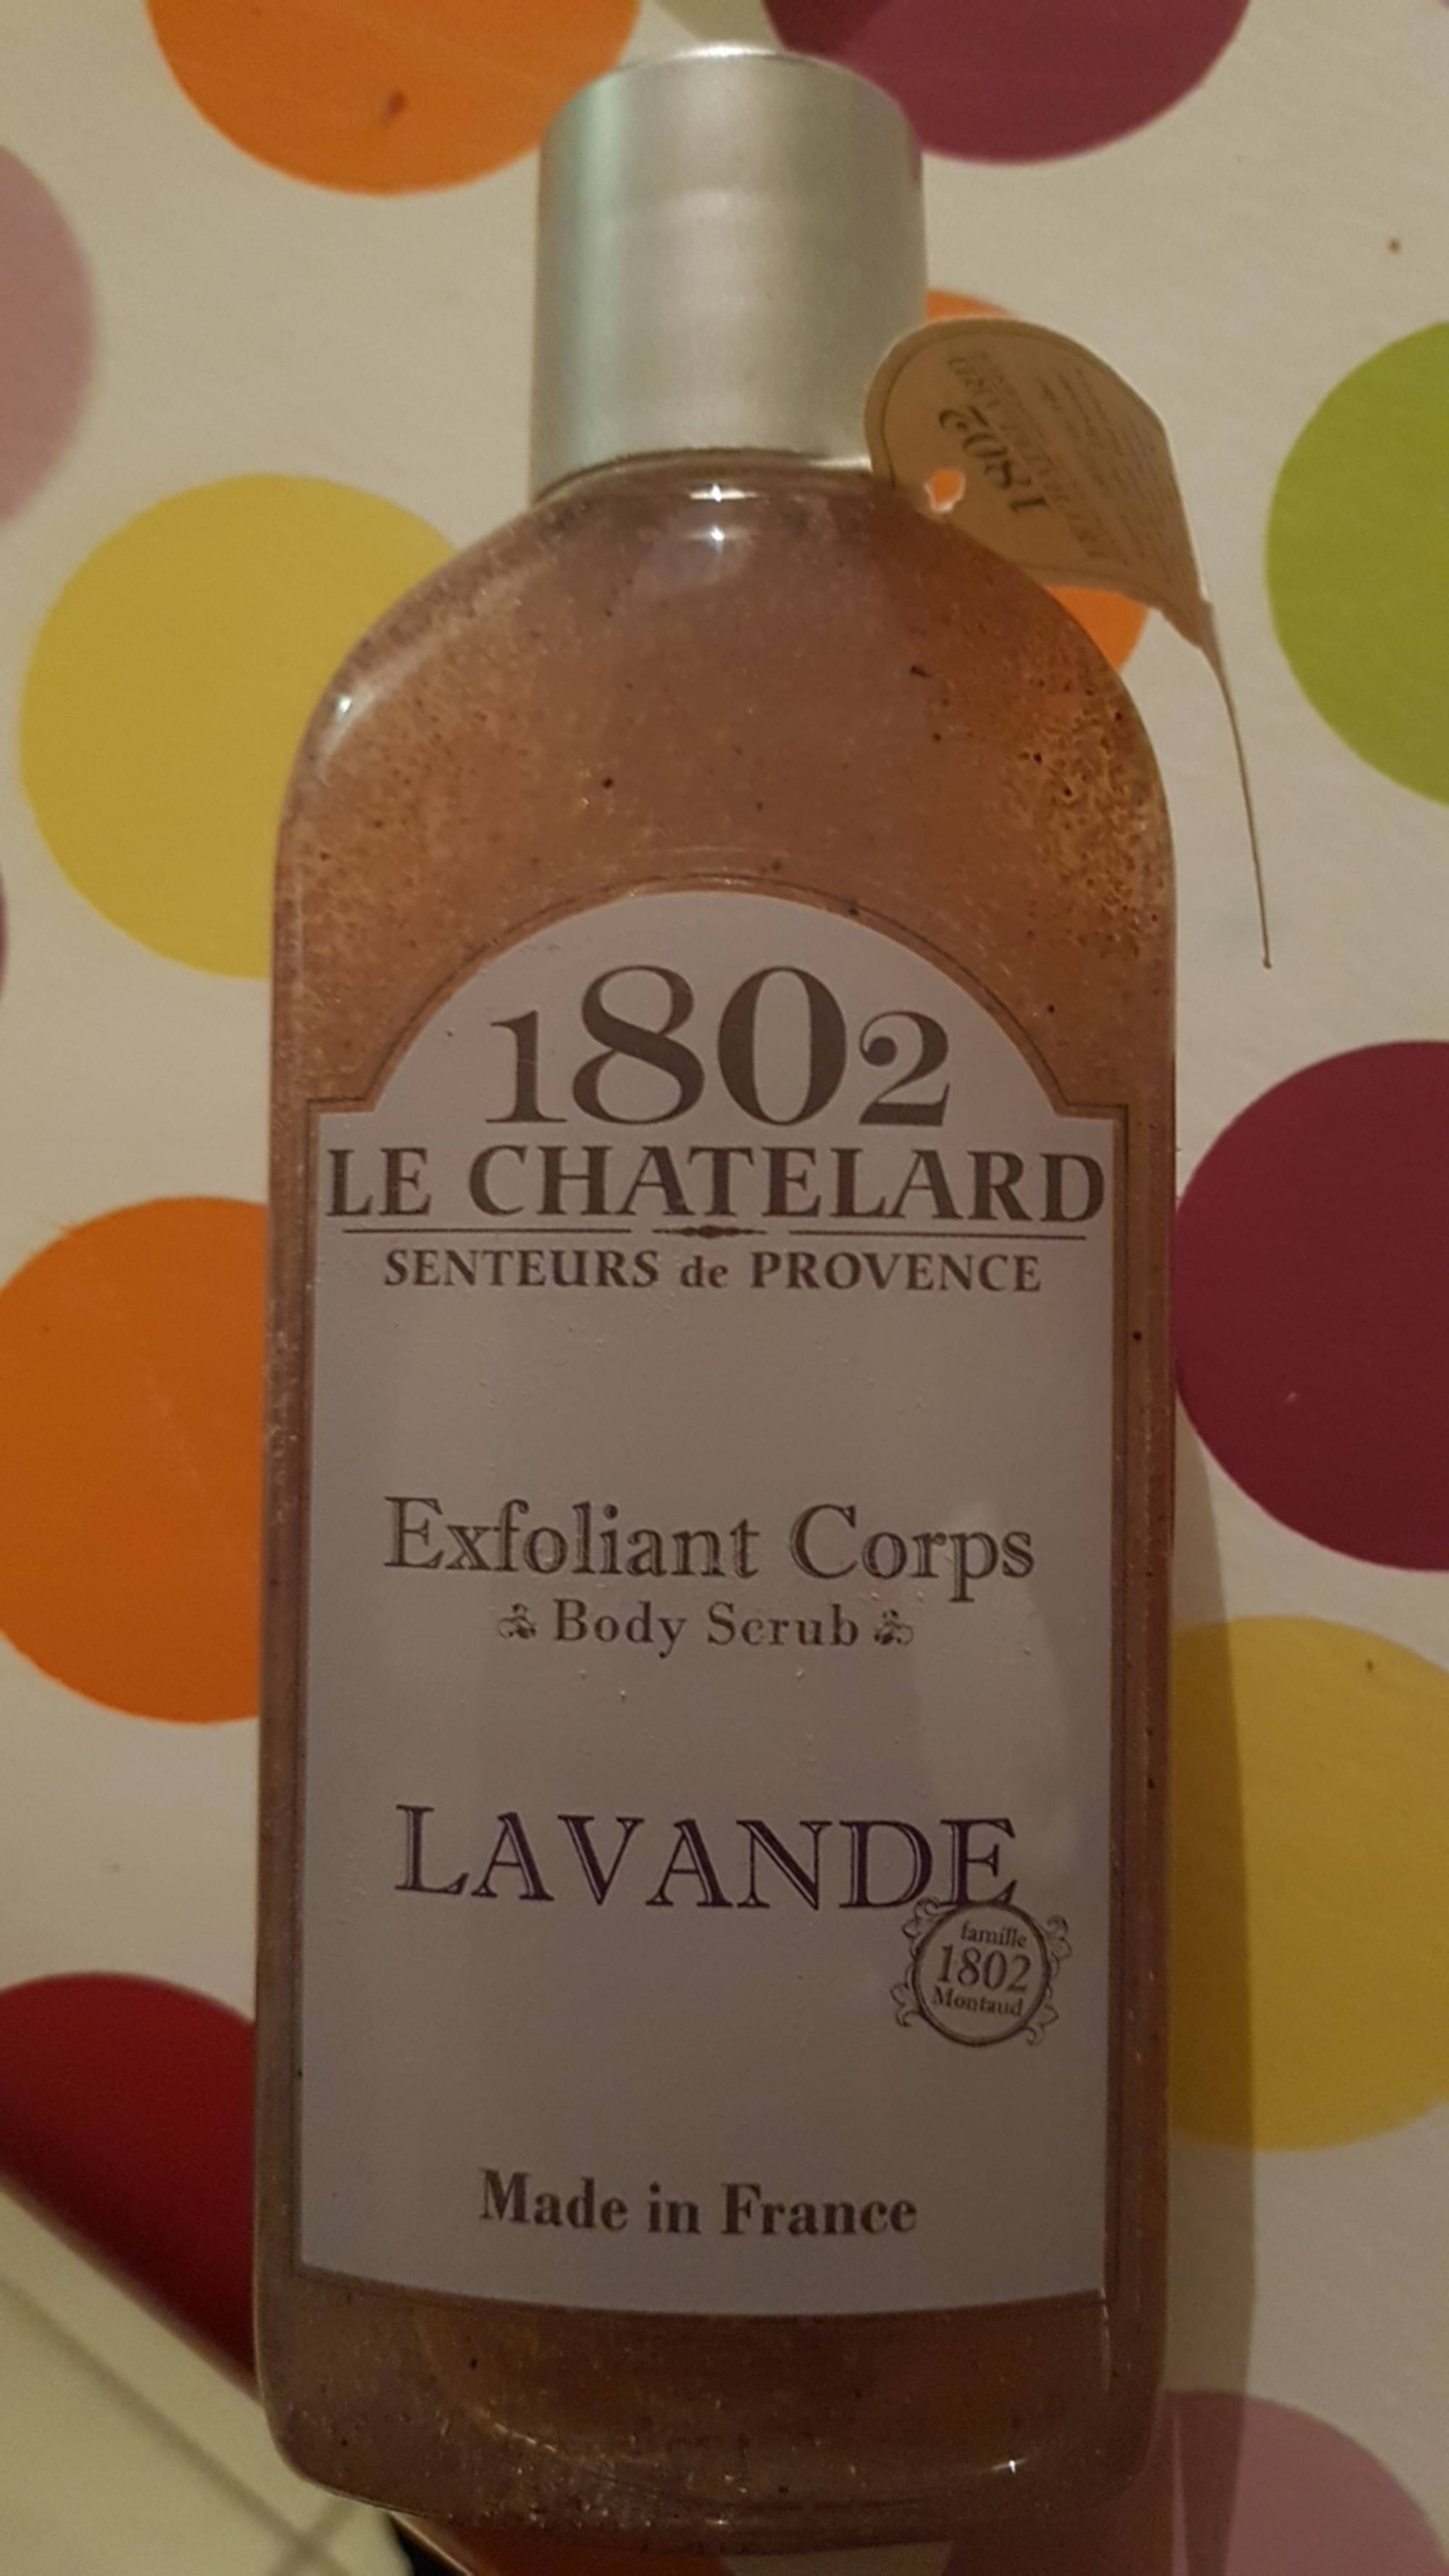 LE CHATELARD 1802 - Senteurs de Provence lavande - Exfoliant corps